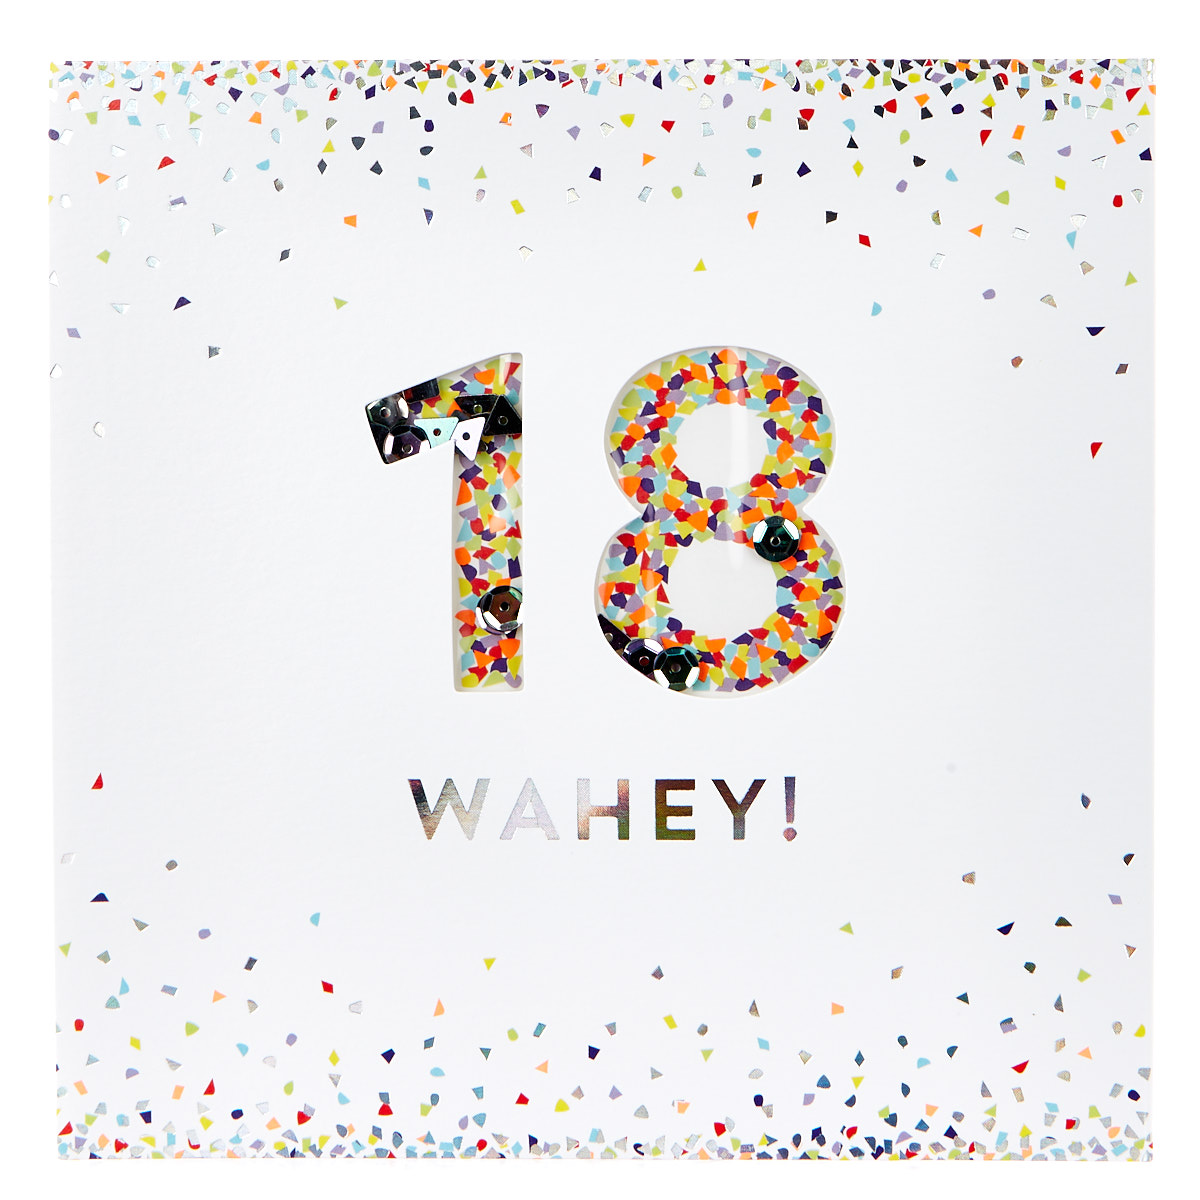 VIP Collection 18th Birthday Card - Confetti 